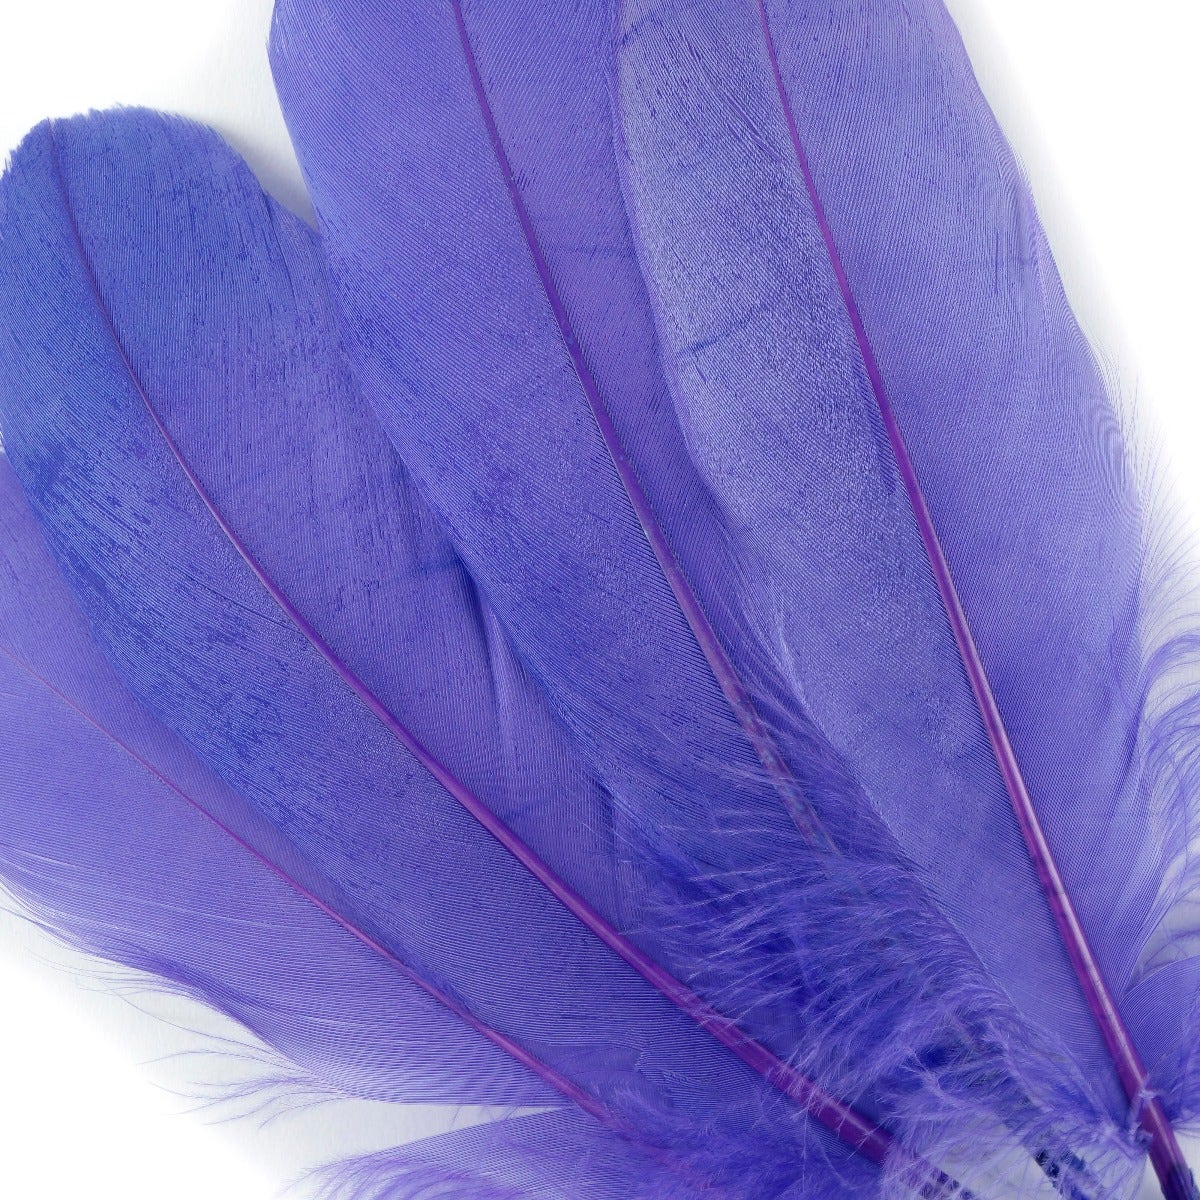 Goose Pallet Feathers 6-8" - 12 pc - Lavender